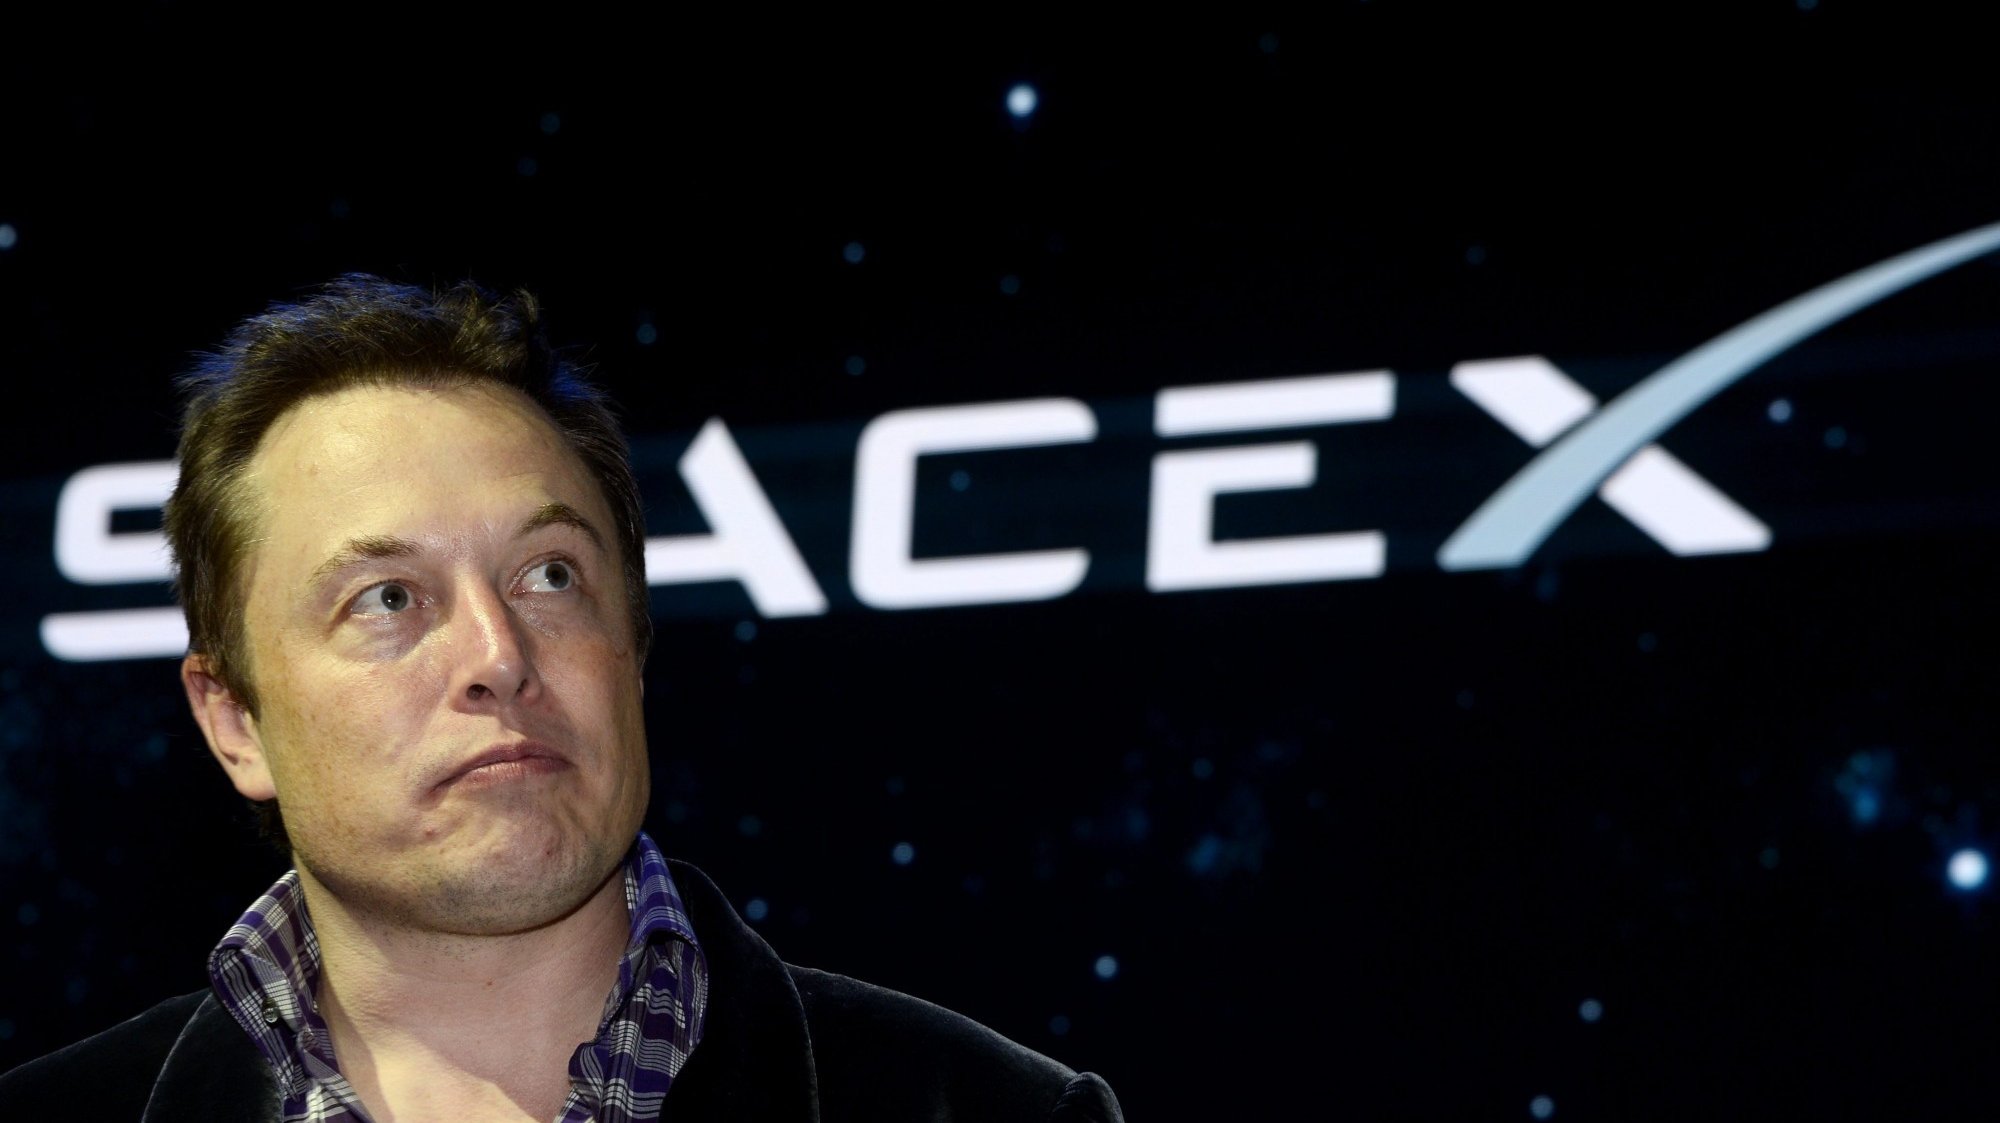 Elon Musk é o responsável pela SpaceX, uma das empresas aeroespaciais mais conhecidas em todo o mundo